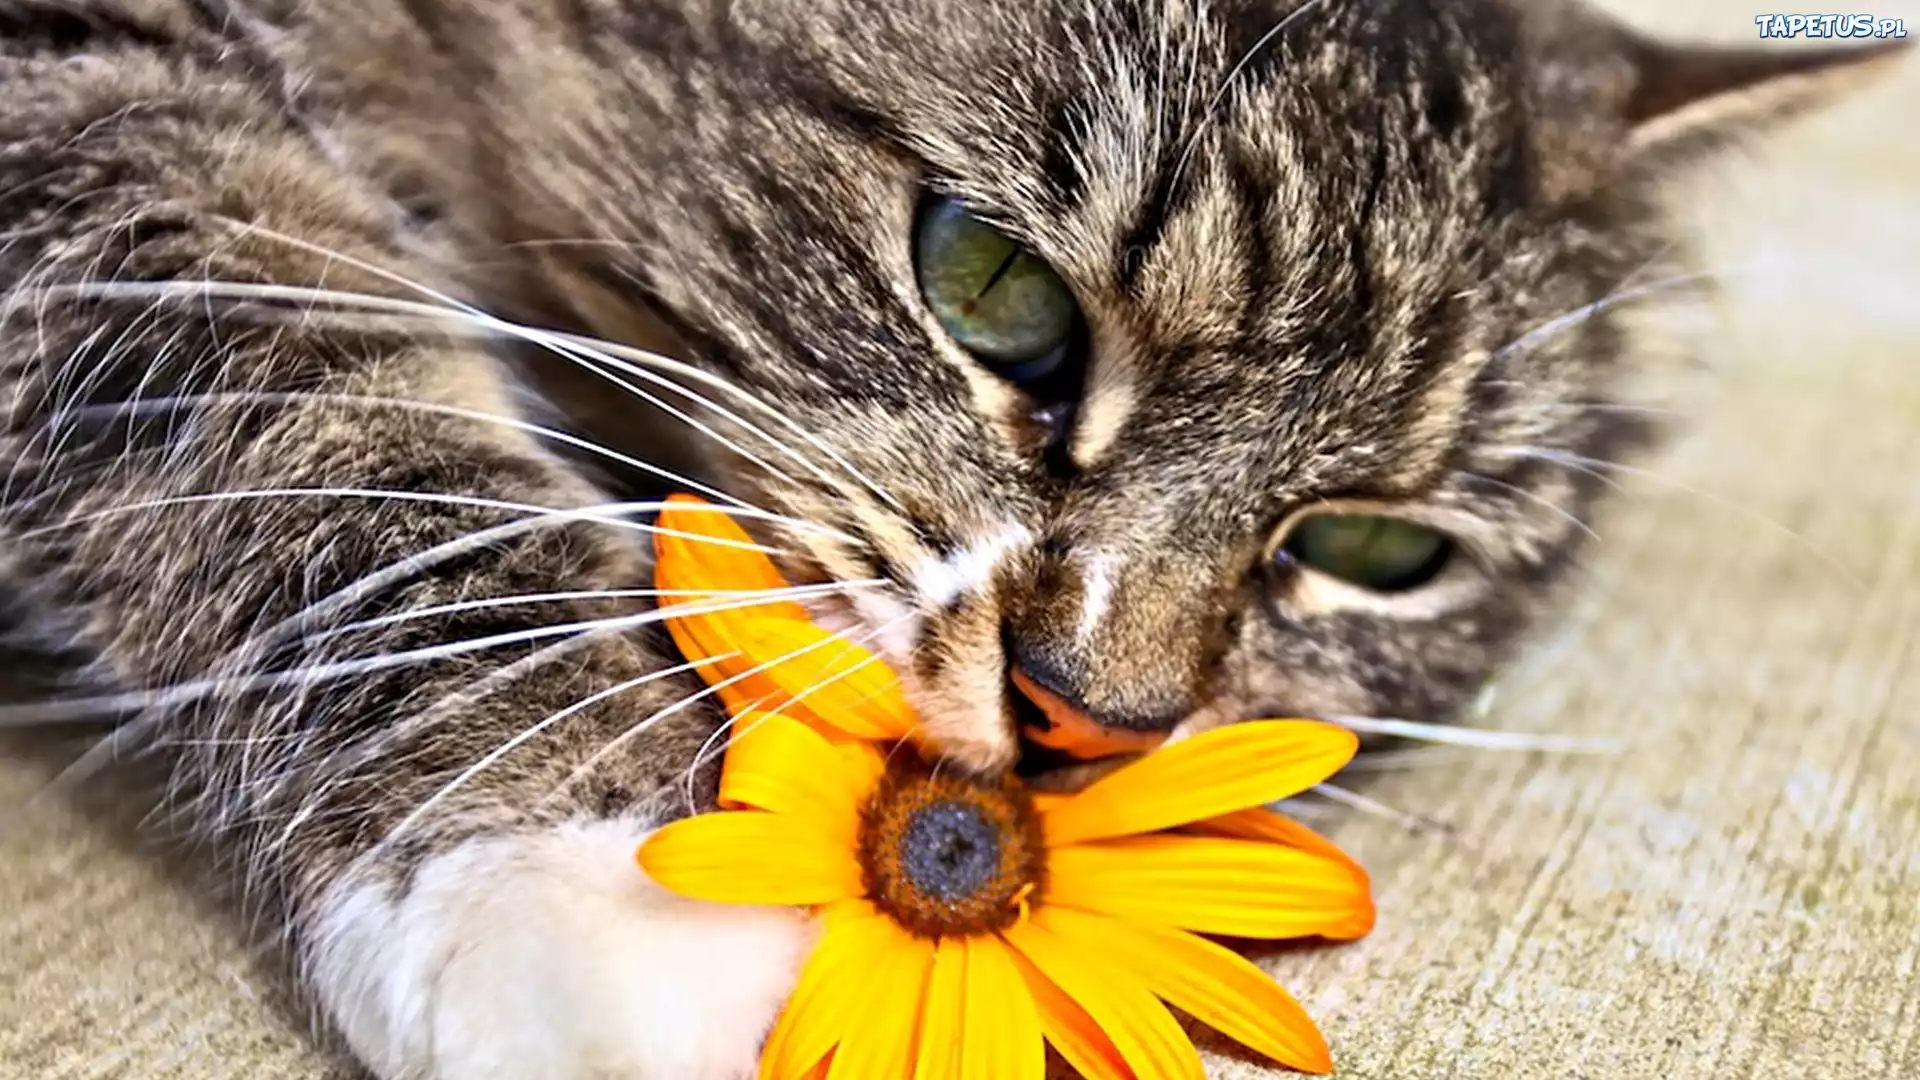 Котенок игра с цветками загрузить